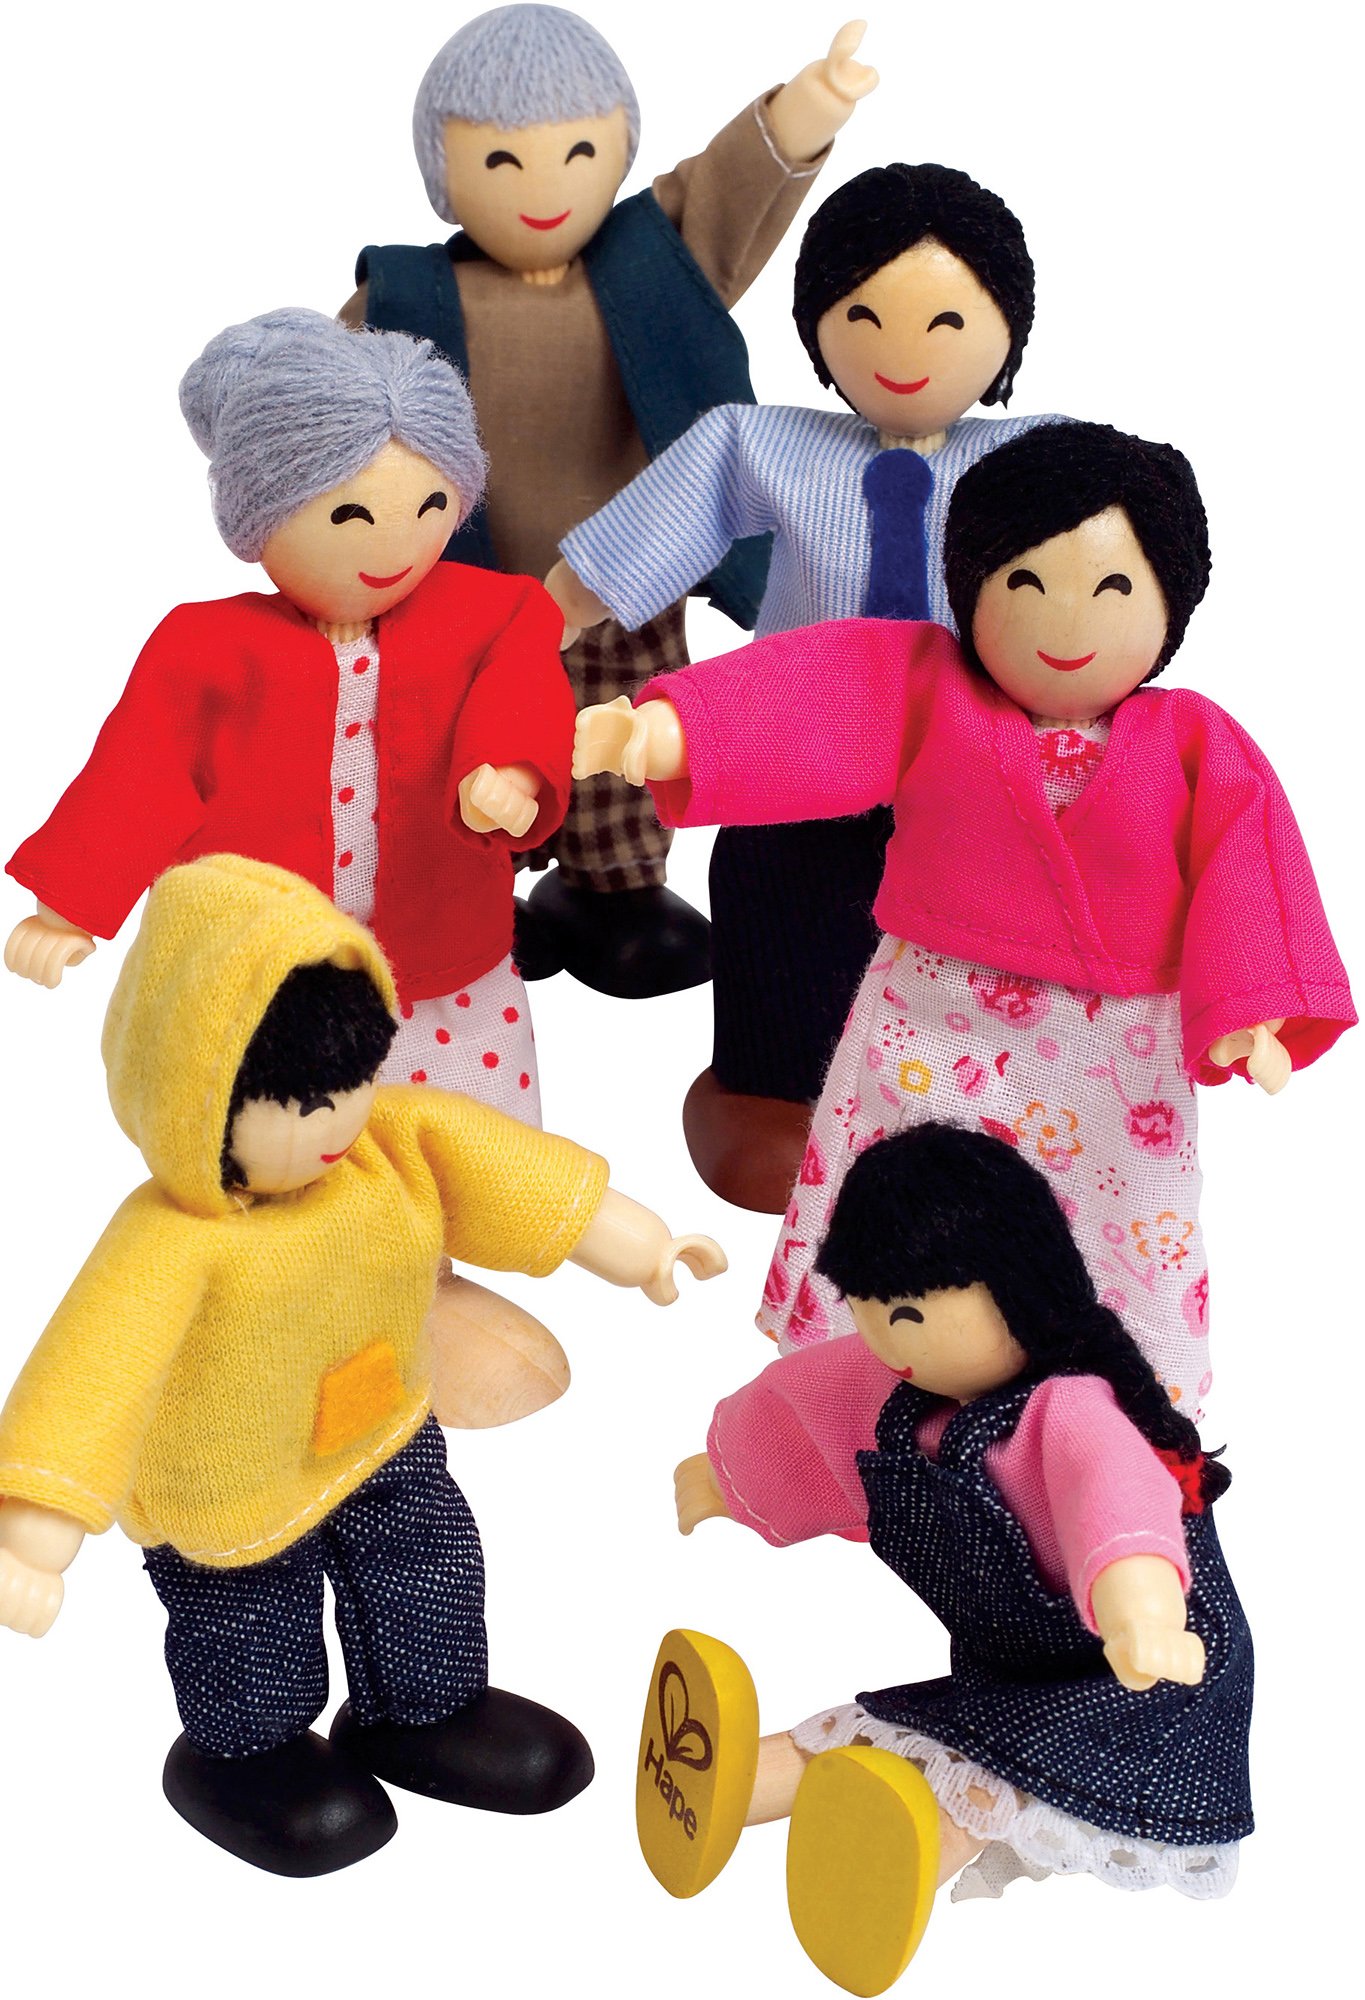 Hape Asian Wooden Doll House Family Set